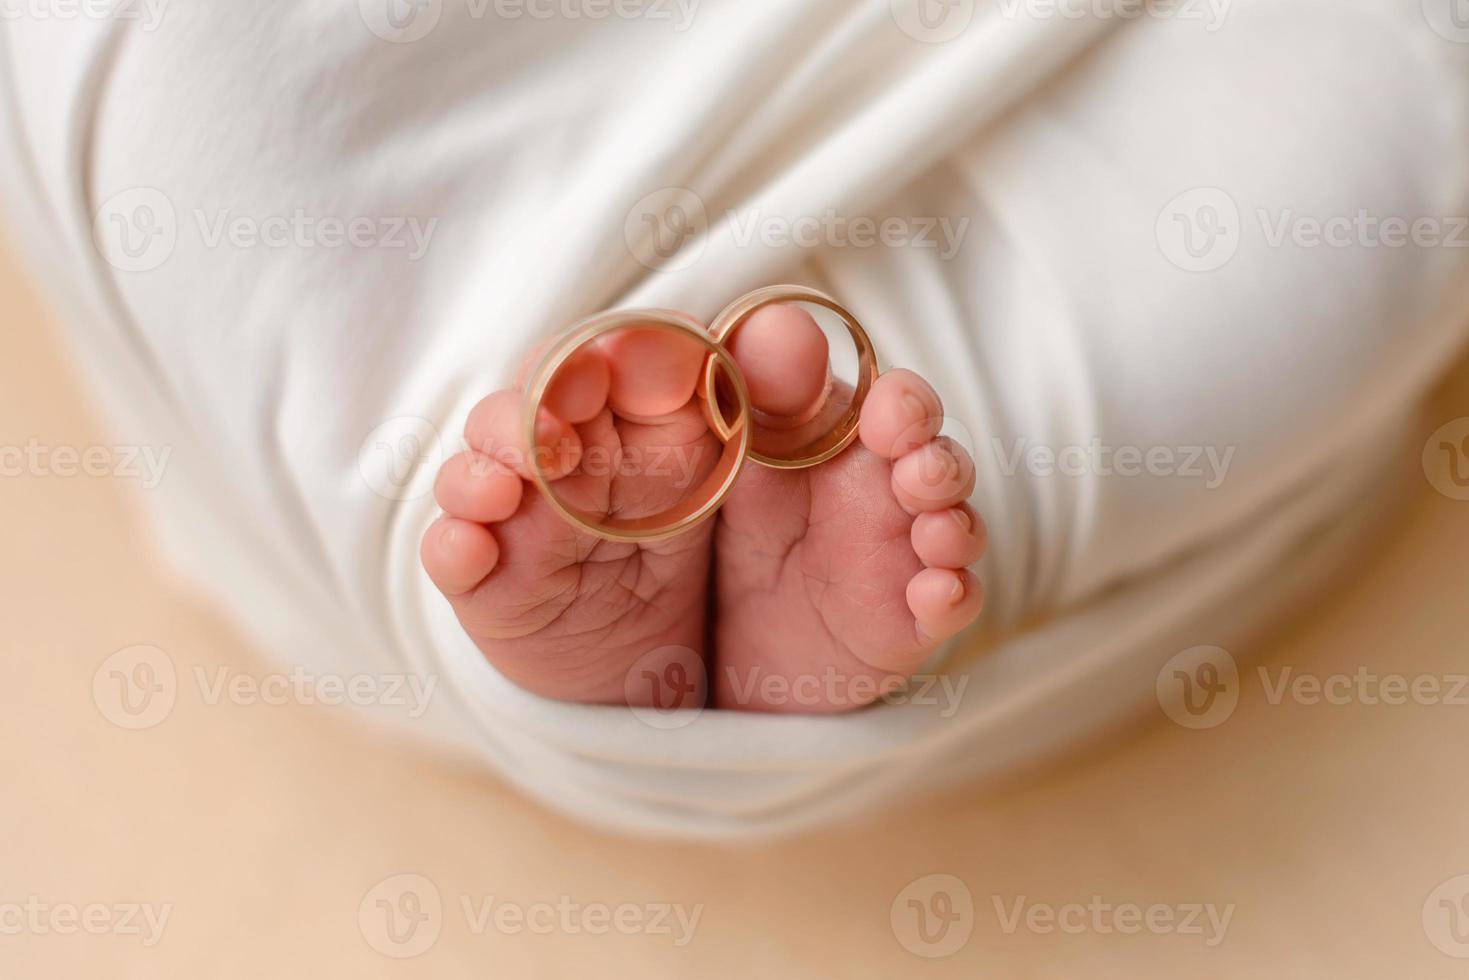 petits pieds d'un nouveau-né avec les alliances de ses parents aux doigts photo